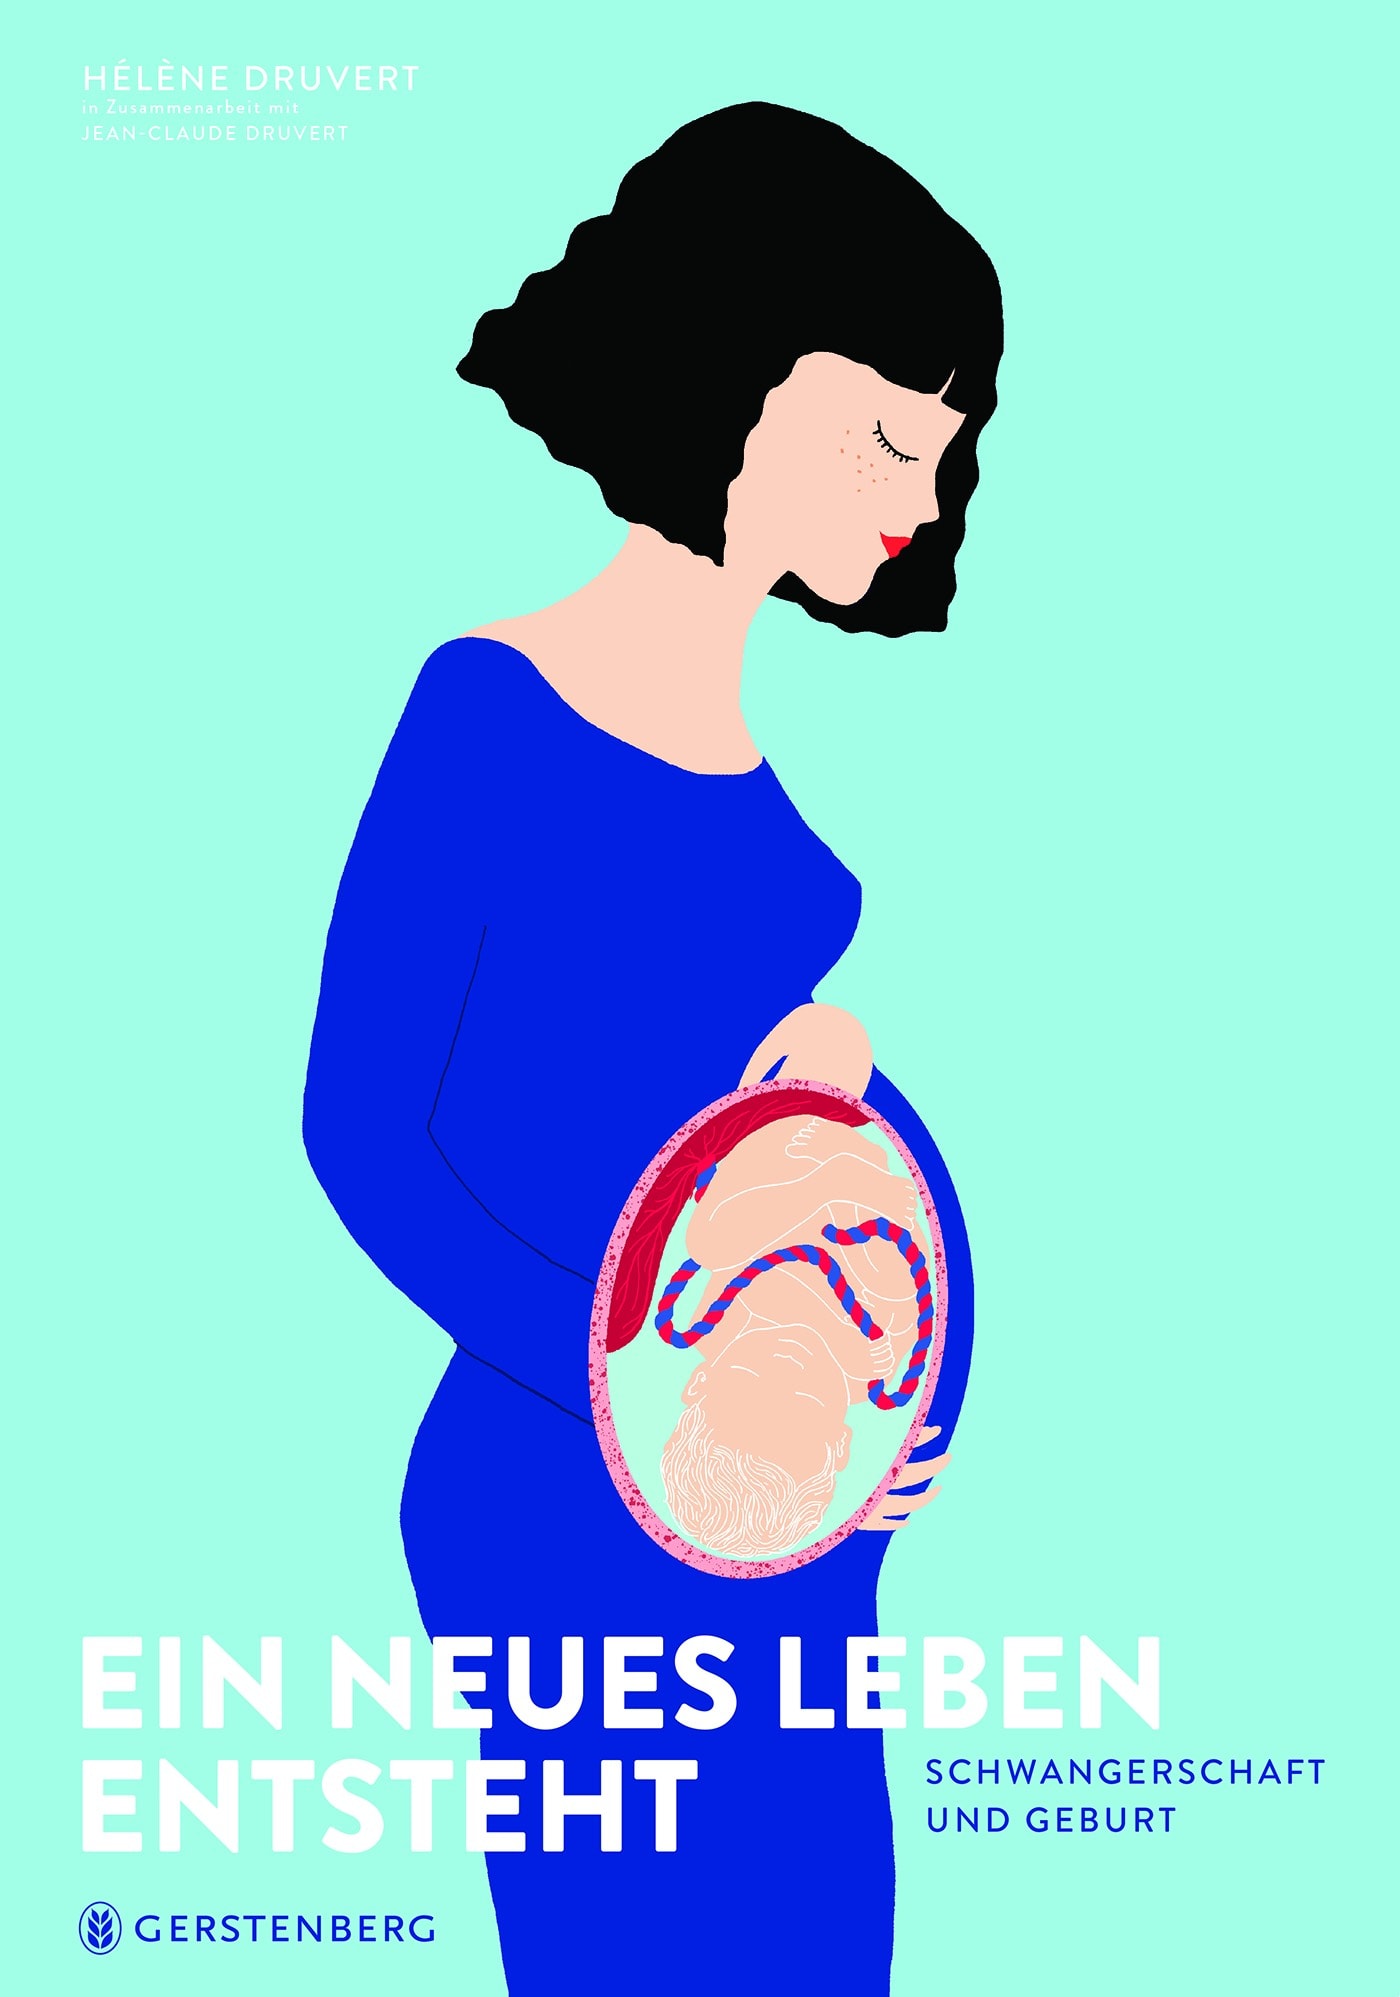 Kindersachbücher zu Schwangerschaft: Ein neues Leben entsteht // HIMBEER